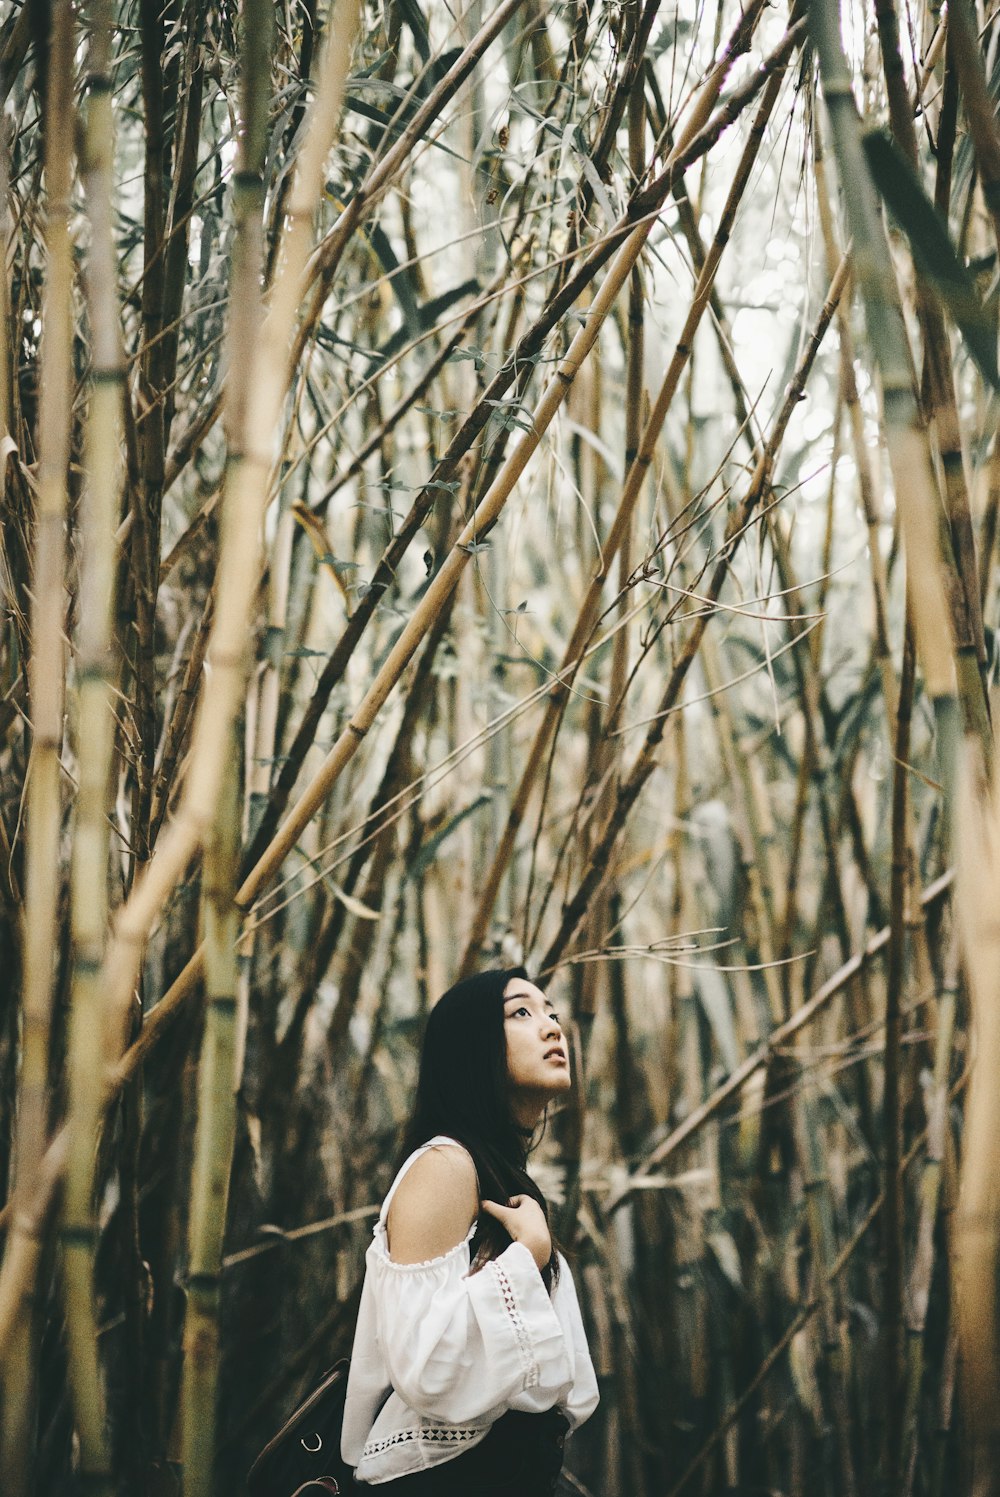 Mujer en la parte superior blanca del hombro frío de pie dentro del bosque de bambú